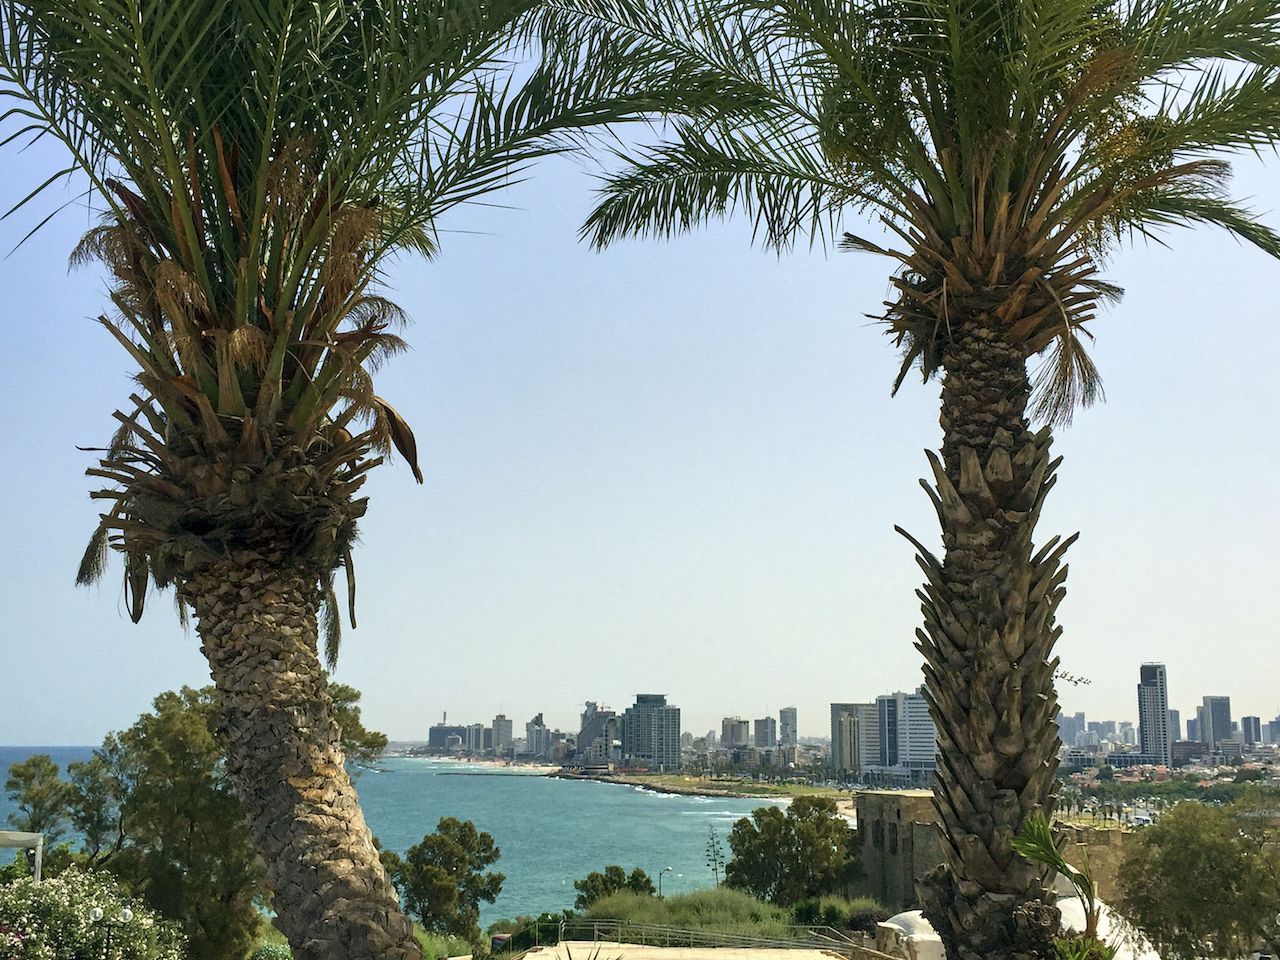 Städtetrip: In Tel Aviv sind jetzt um die 23 Grad. Die Regensaison startet Ende November.